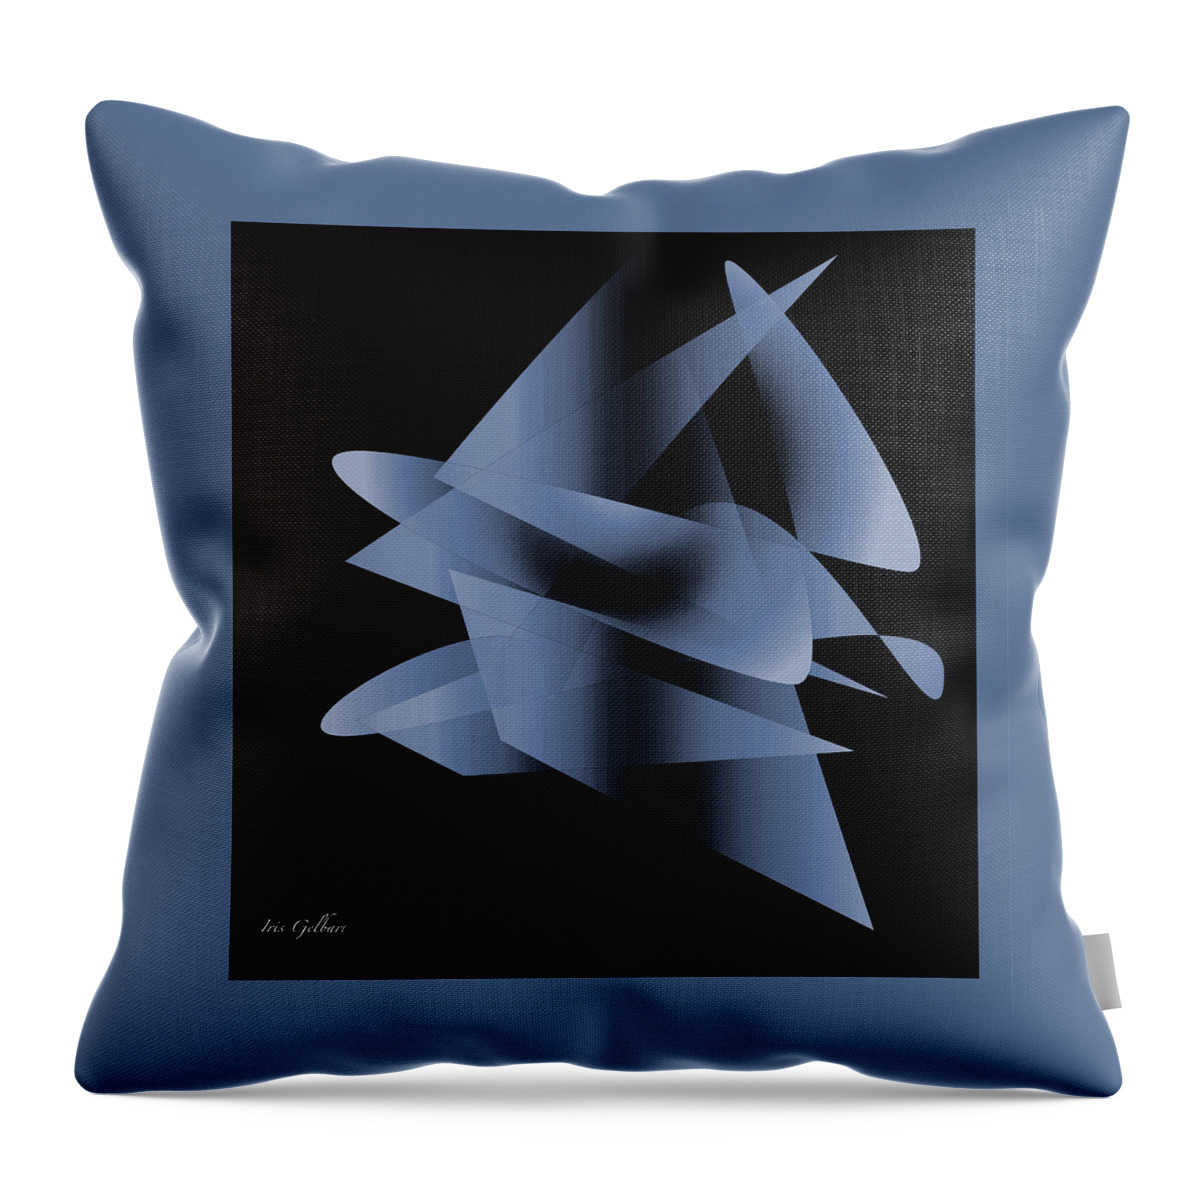 Abstract Throw Pillow featuring the digital art Modern 12 #1 by Iris Gelbart